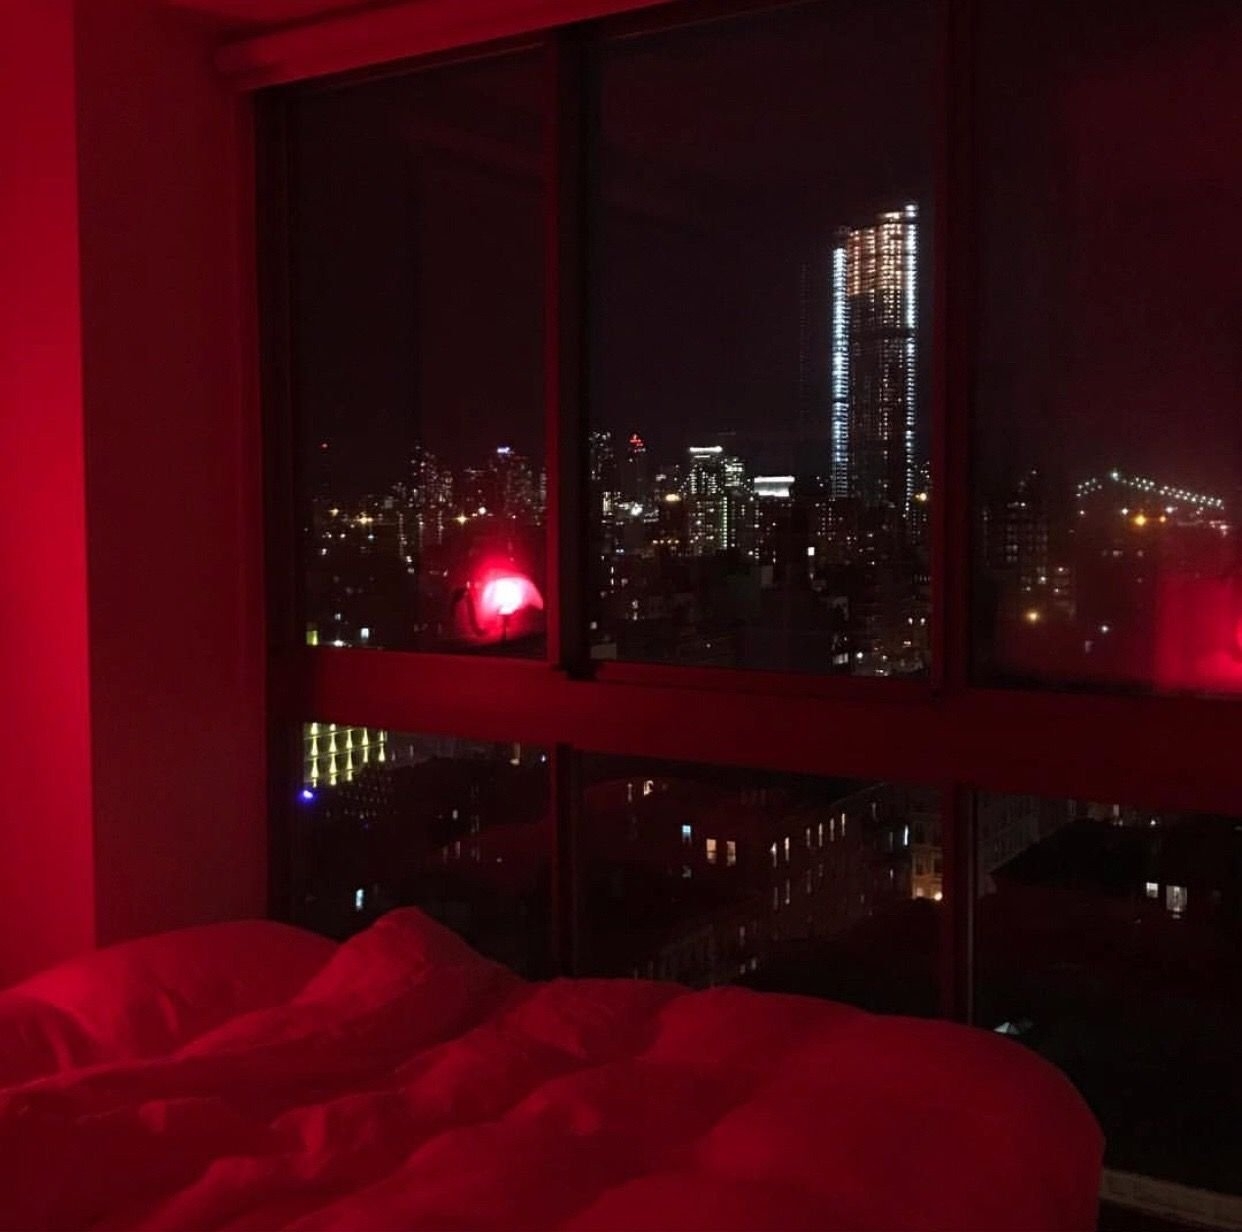 Звуки в доме ночью. Комната с красной подсветкой Эстетика. Уютная комната с красной подсветкой. Комната с красной подсветкой. Красное освещение в комнате.